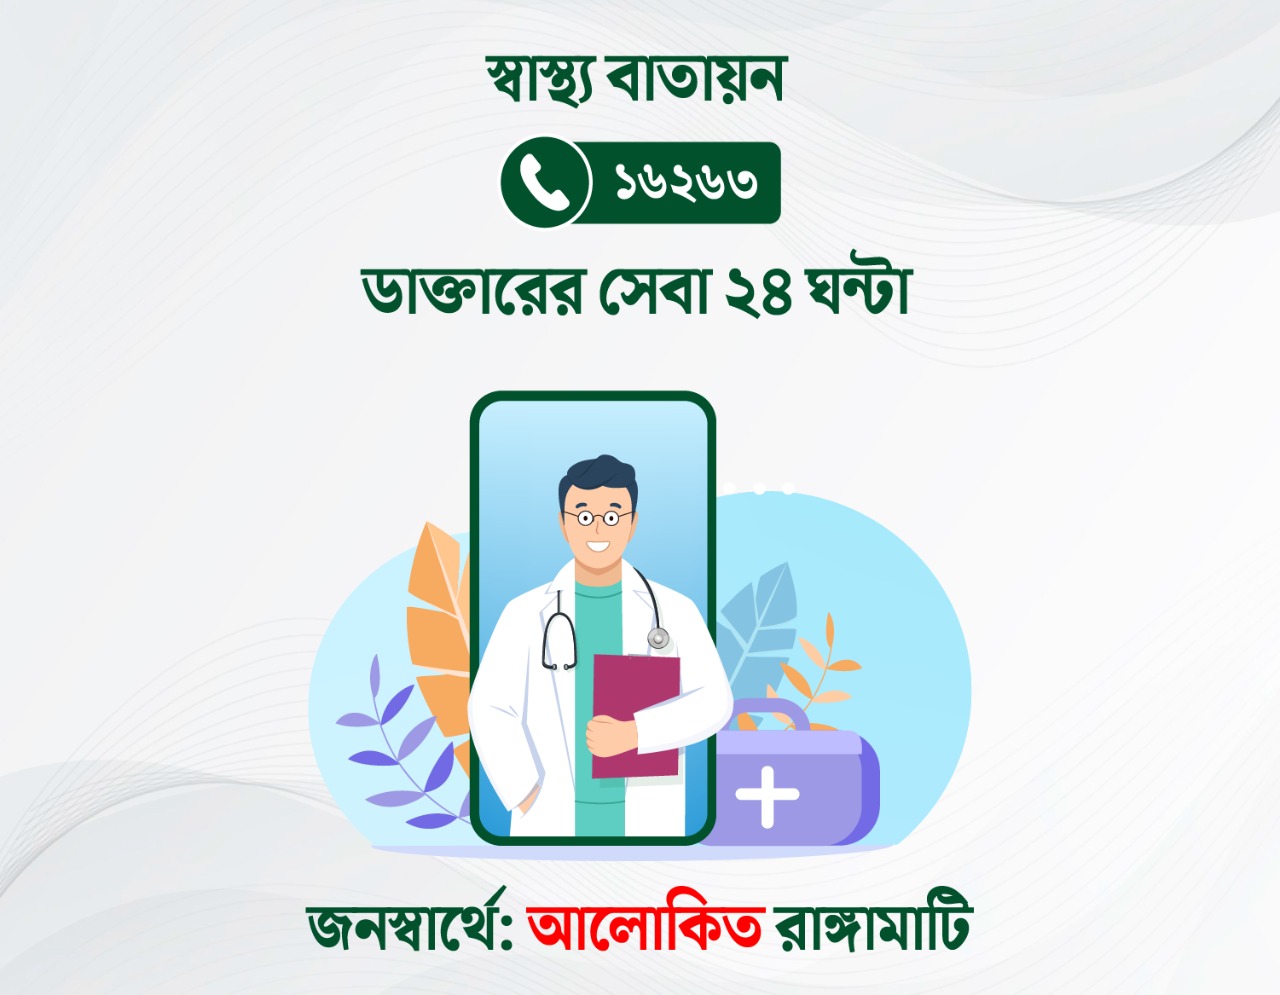 Rangamati medical emergency hotline